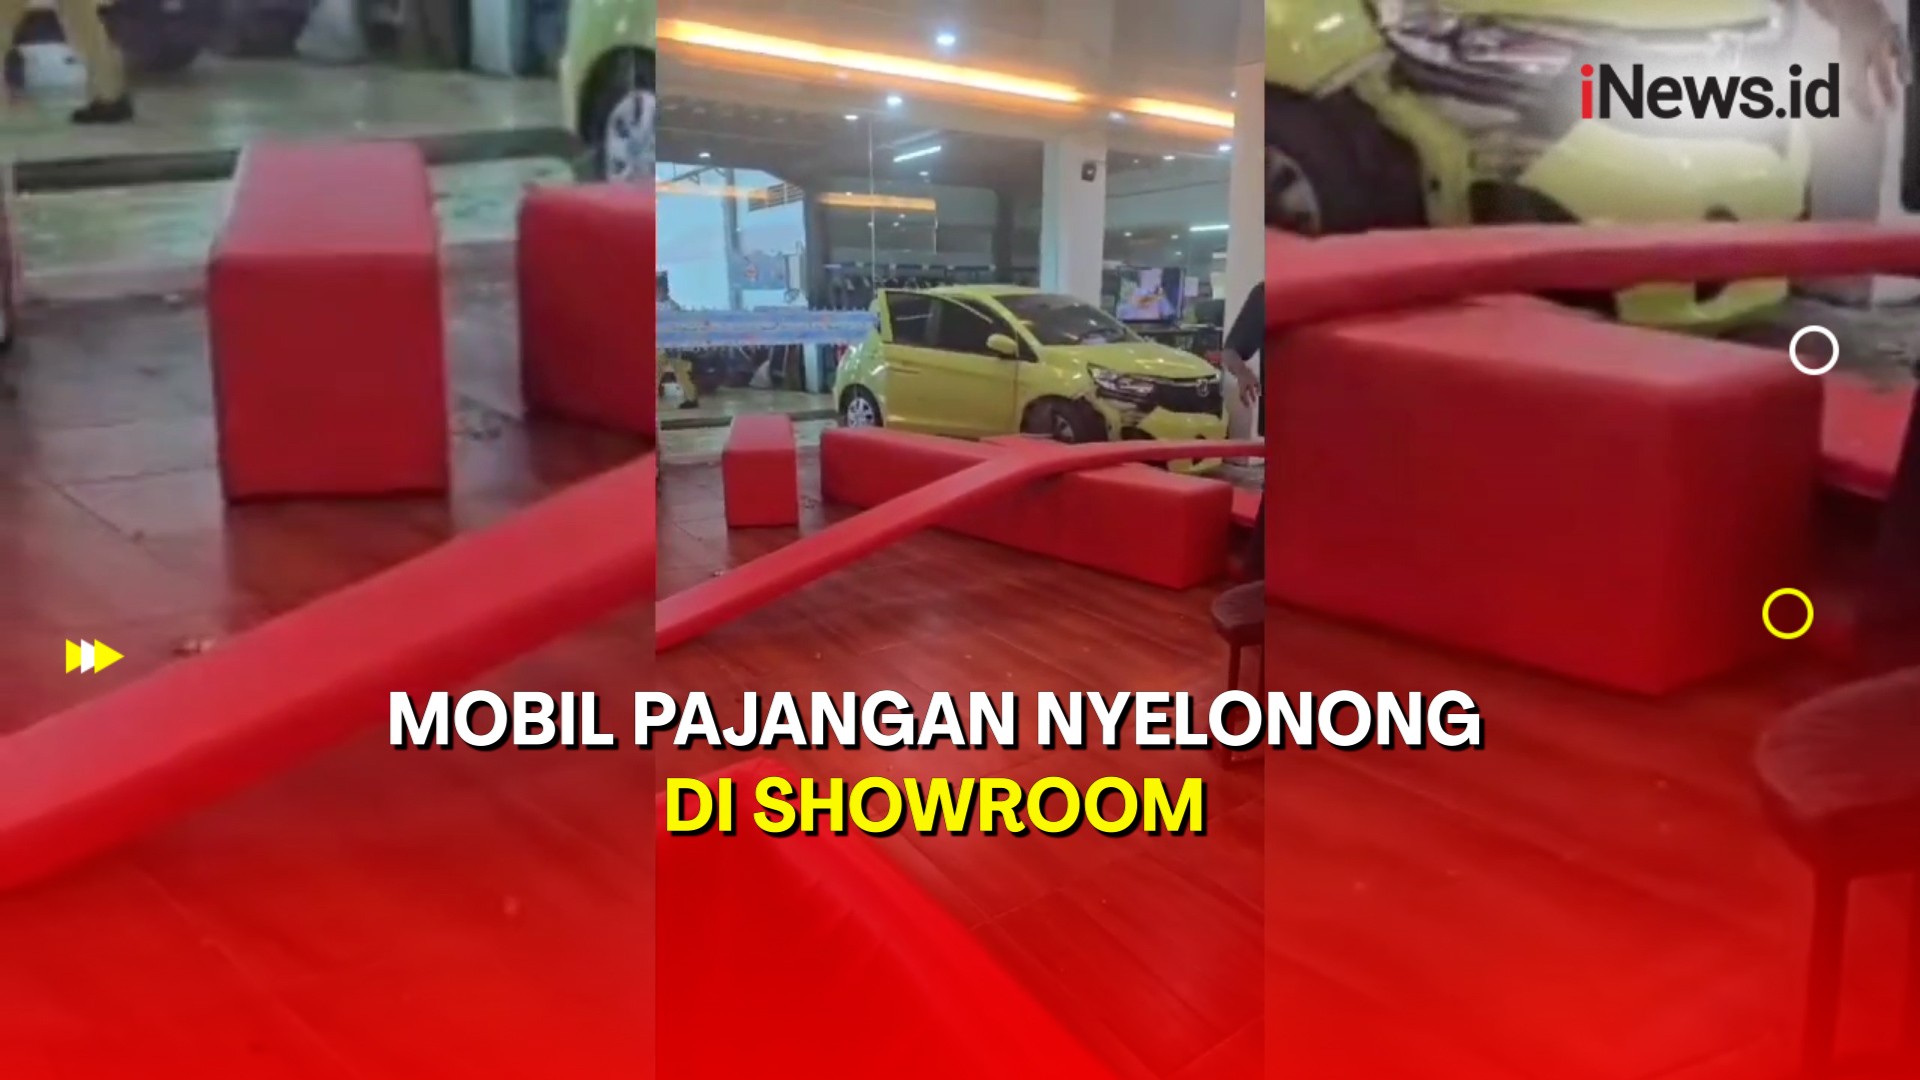 Karyawan Ceroboh Tak Sengaja Injak Pedal Gas, Mobil Nyelonong di Showroom Palembang